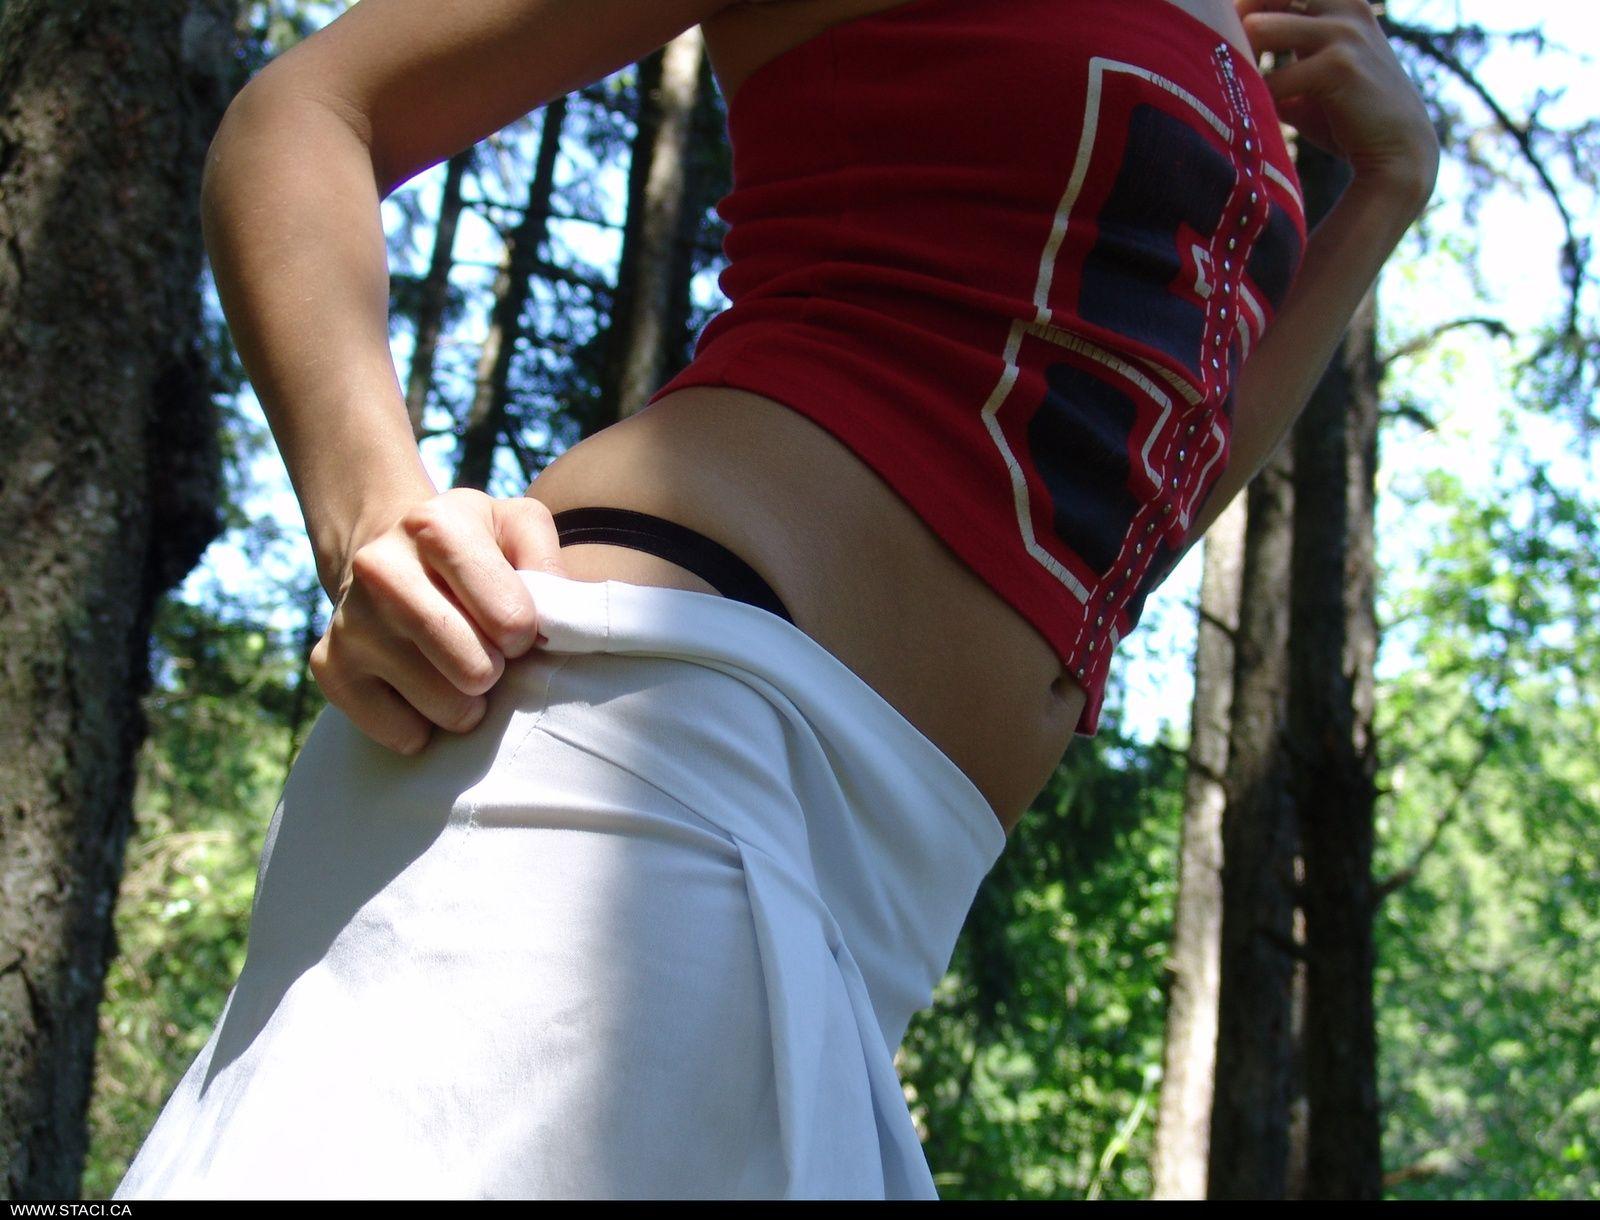 十代の尻軽女staci.caの写真は、森の中でいたずらを得る
 #60002924